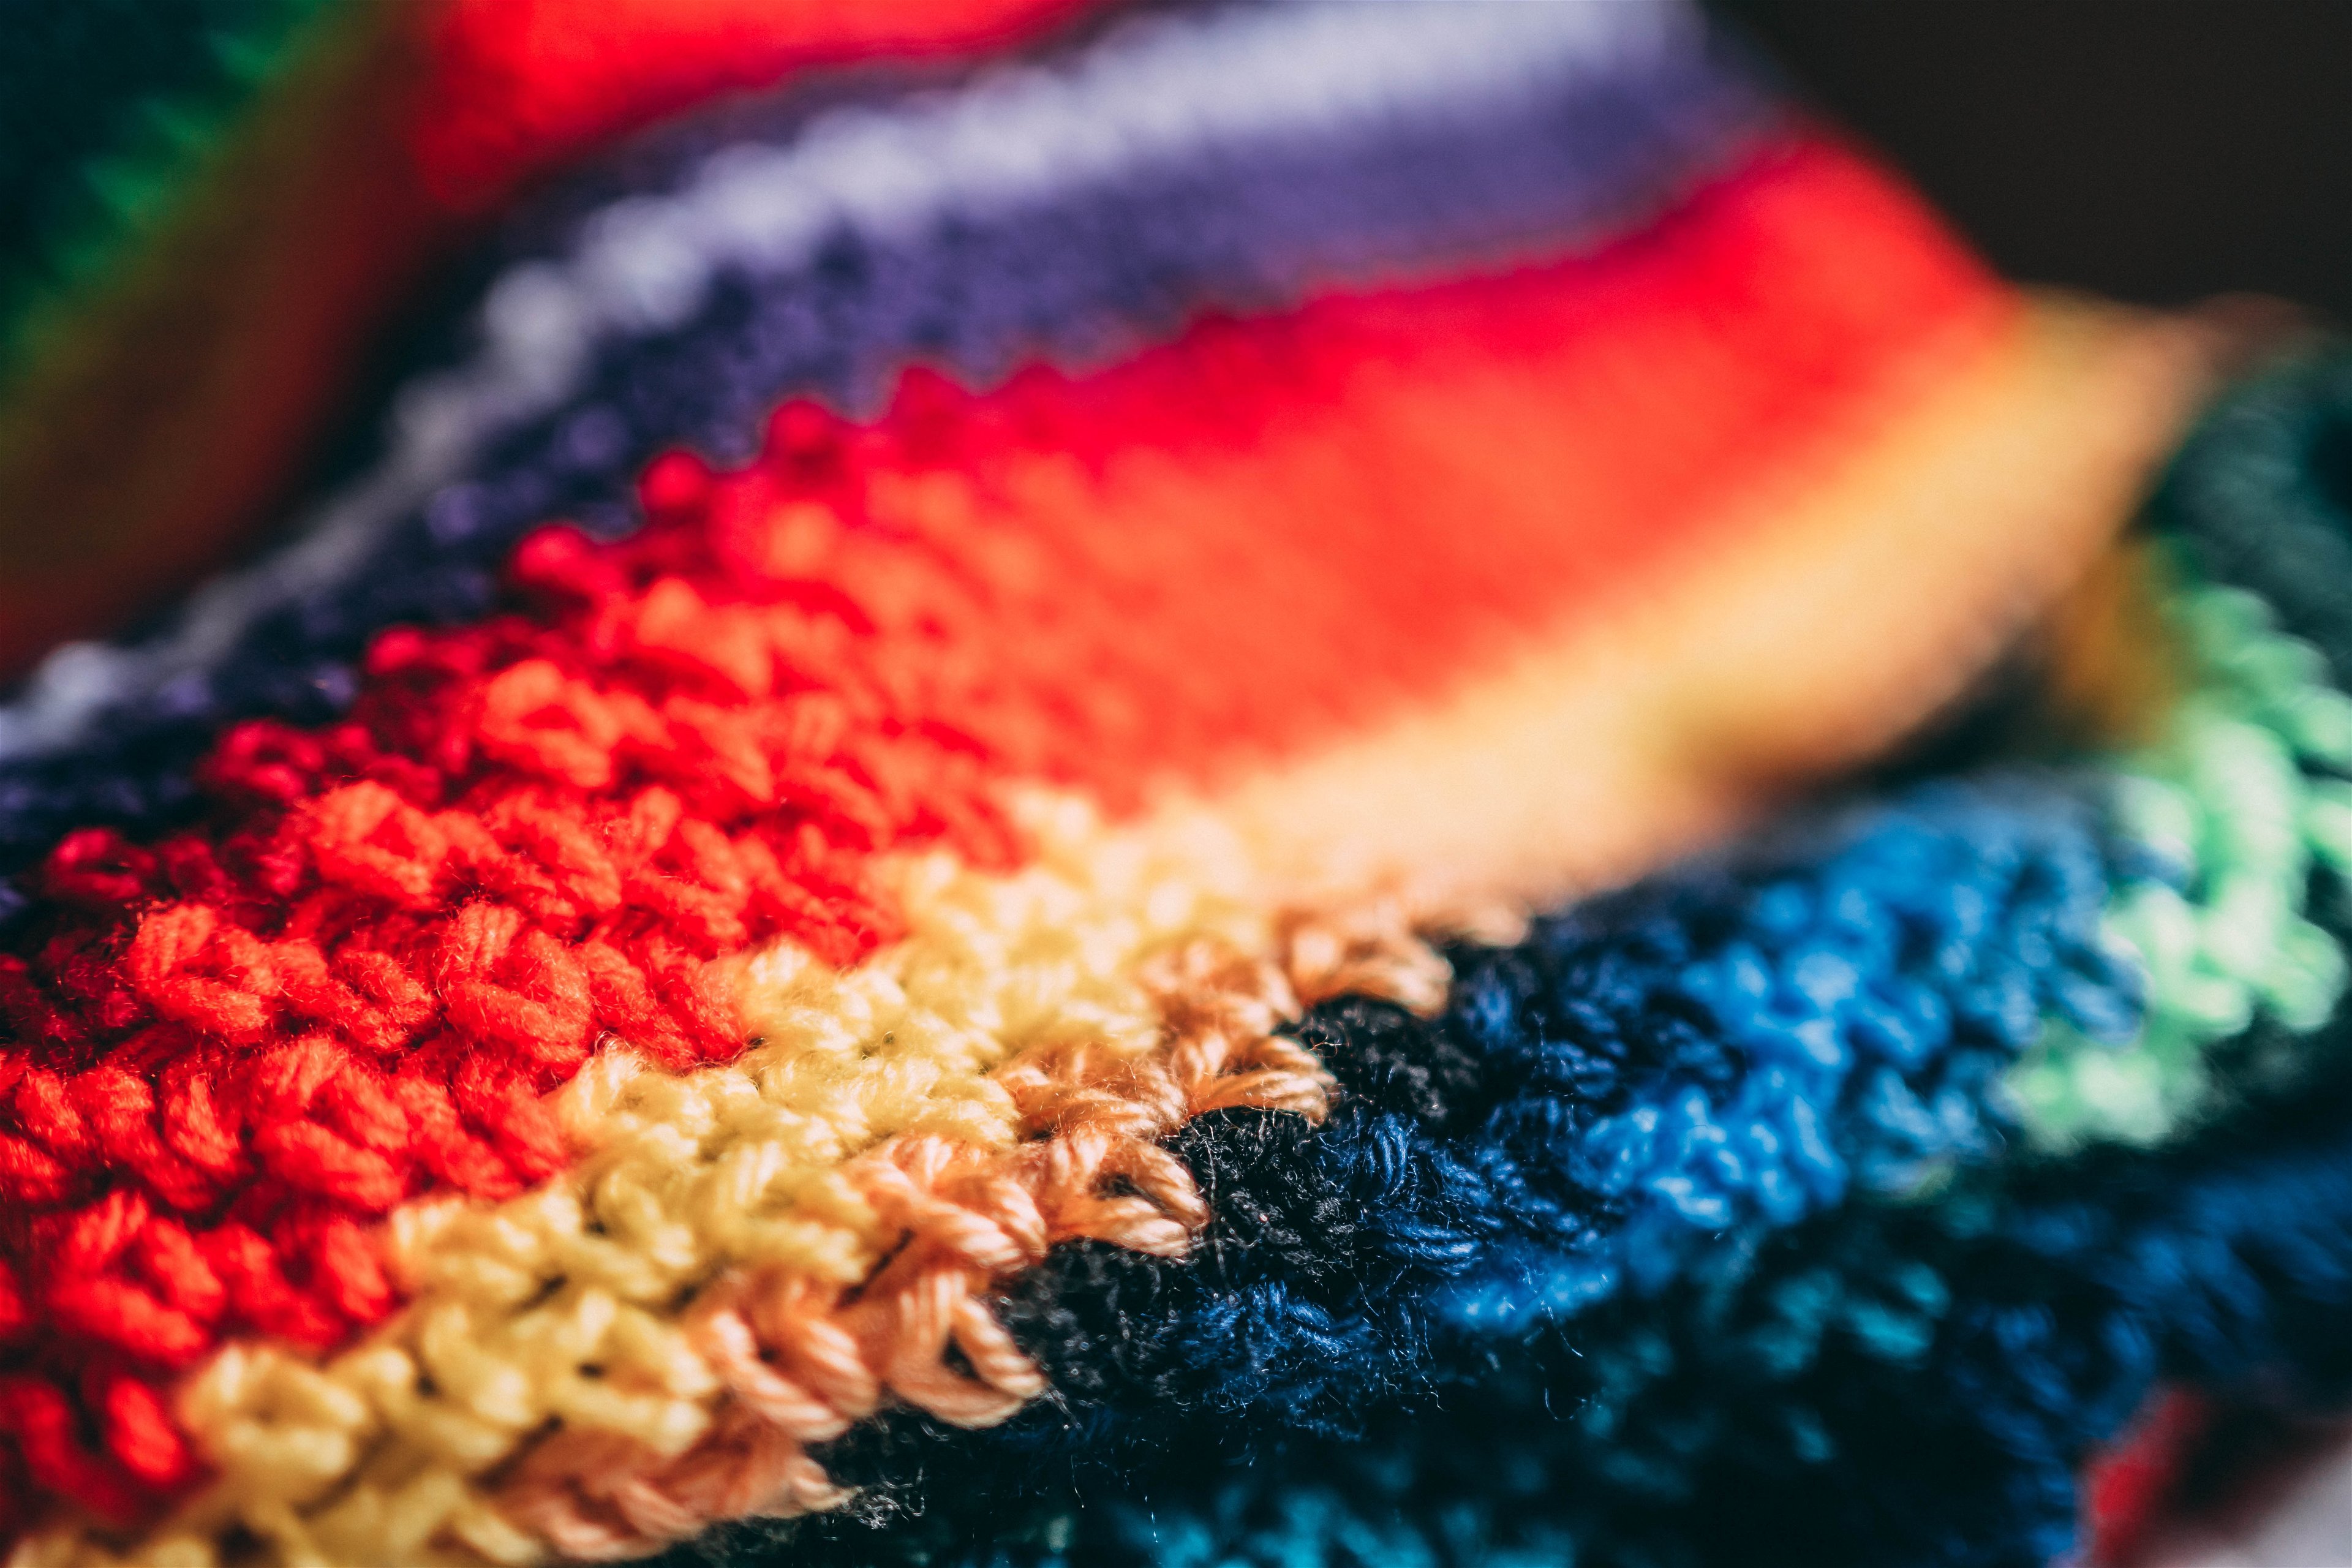 Online beginner's crochet for children aged 8 yrs+